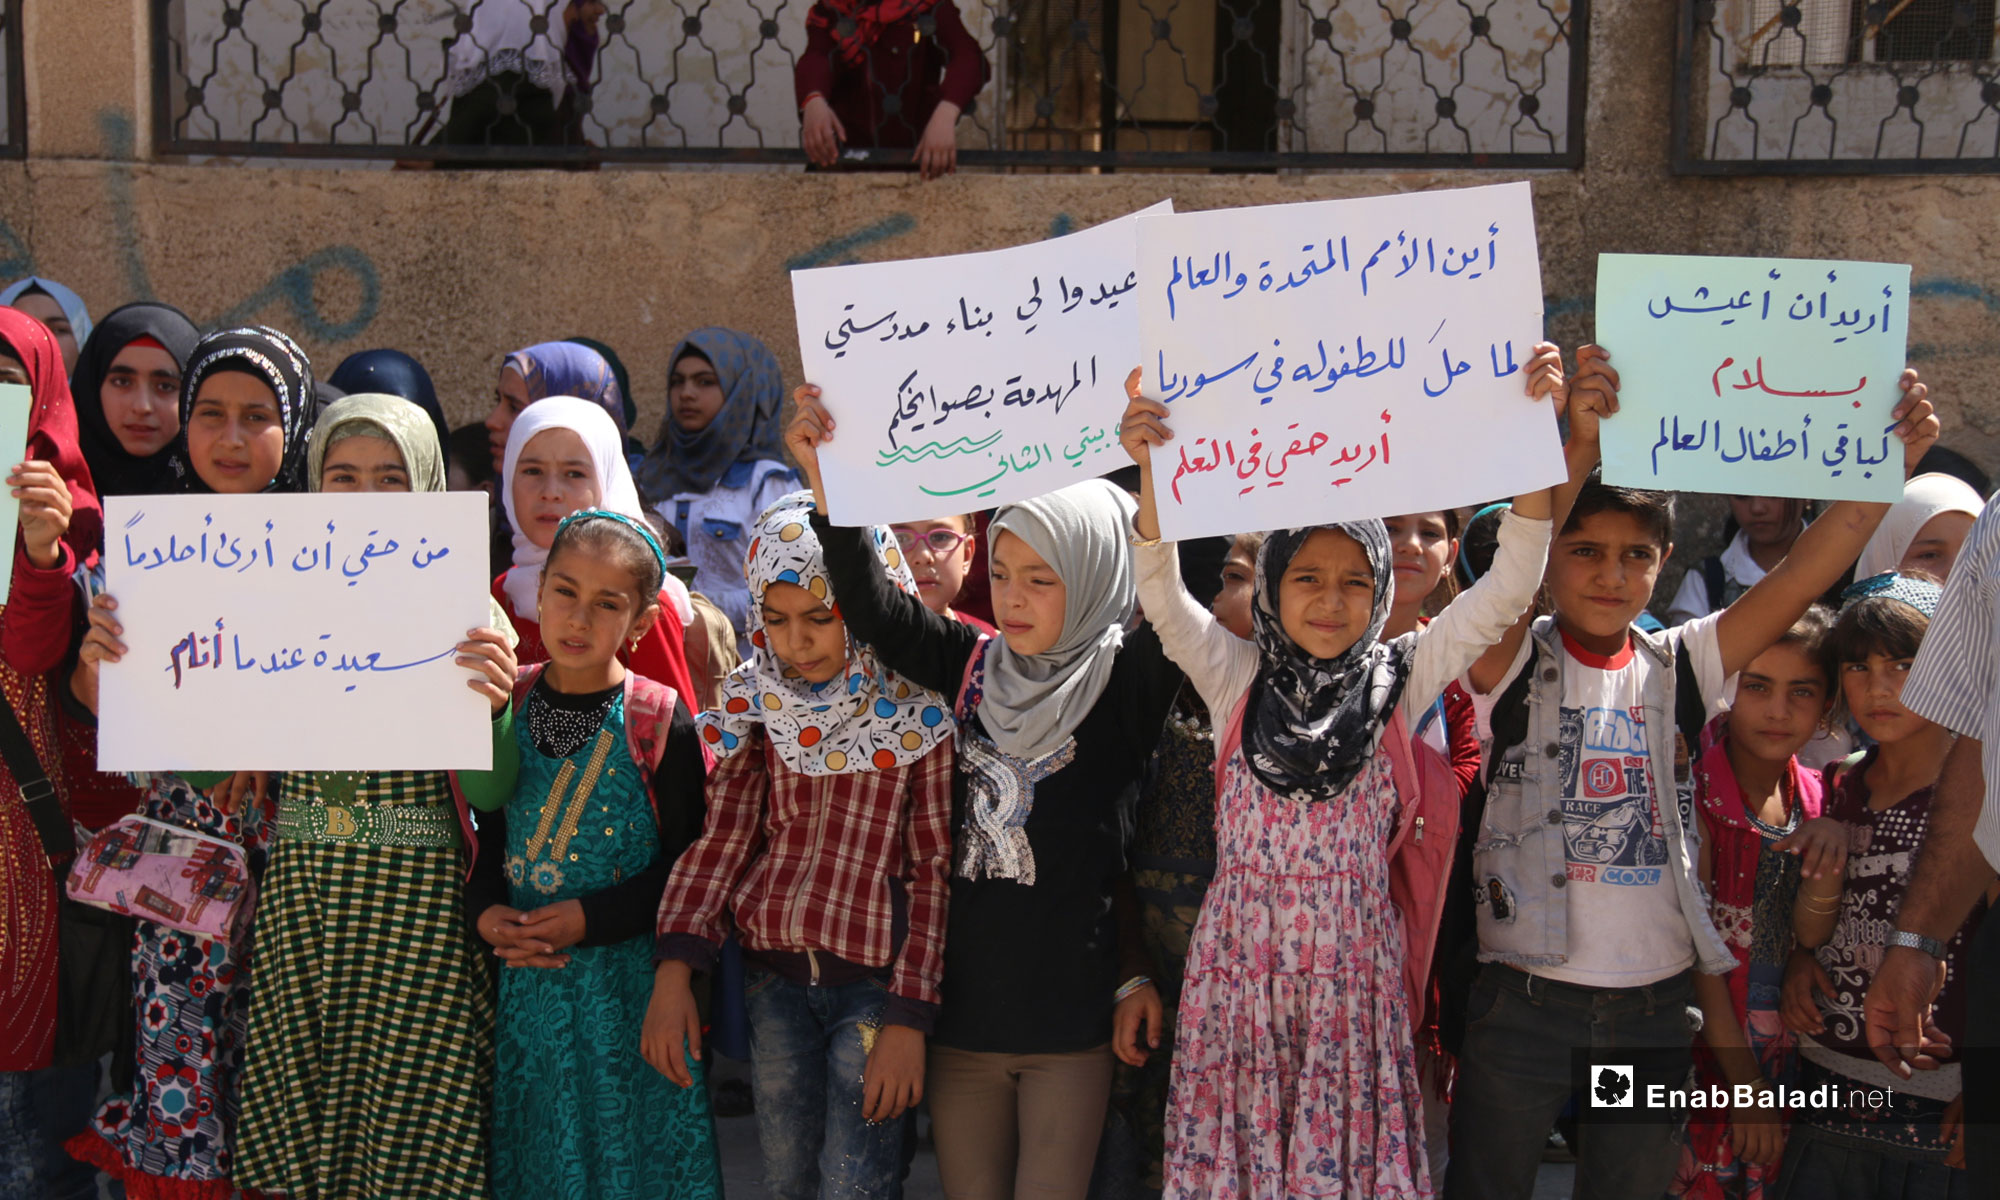 وقفة احتجاجية نظمها الكادر التدريسي في بلدة كفر عويد بريف إدلب تطالب بدعم التعليم في المناطق المحررة - 19 من أيلول 2018 (عنب بلدي)